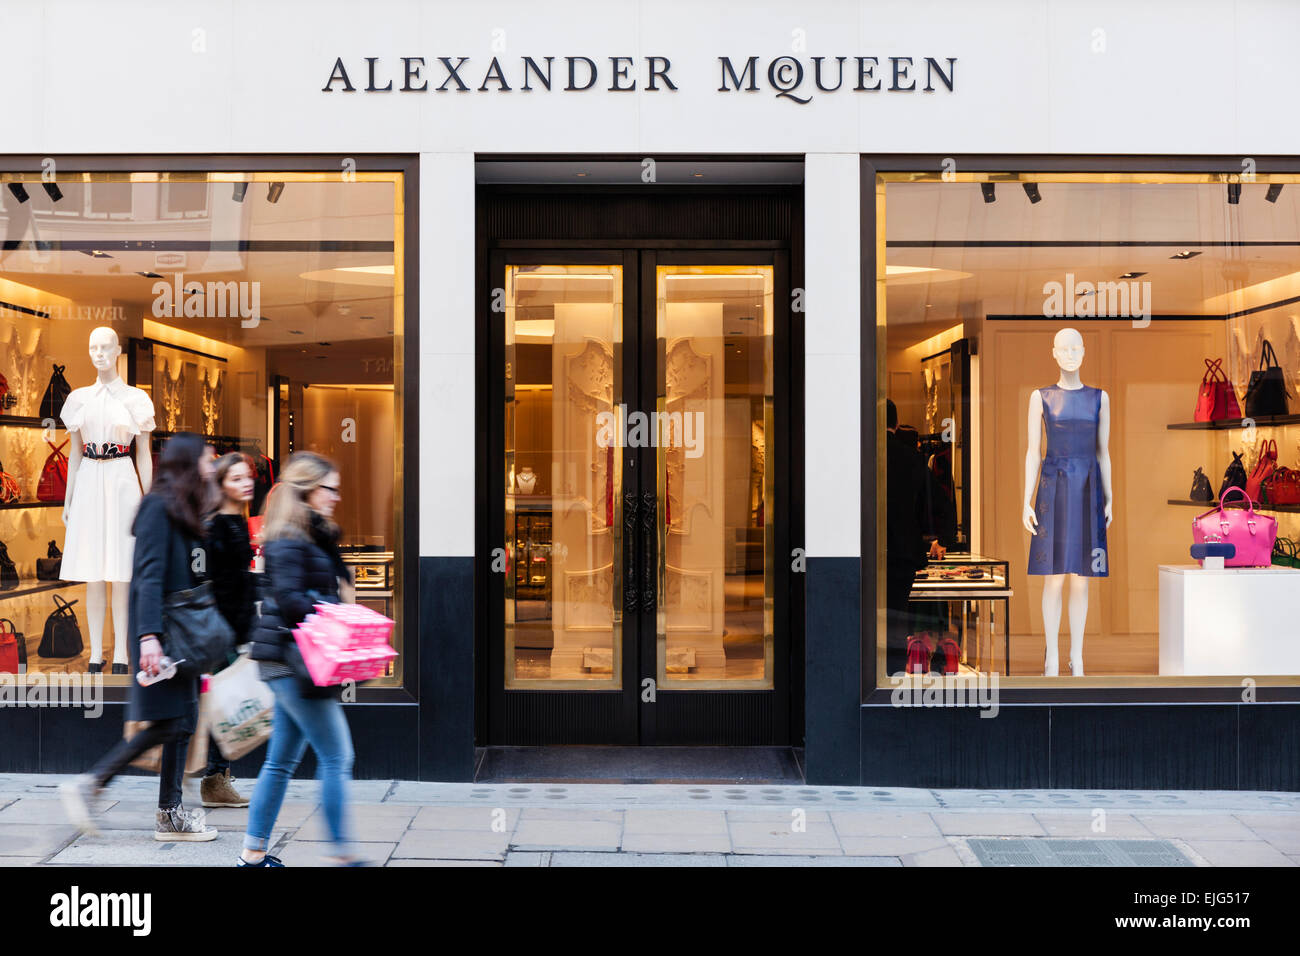 Luxury Shopping Street In Paris Stock Photo - Download Image Now -  Alexander McQueen - Designer Label, Alexander McQueen - Fashion Designer,  Architecture - iStock